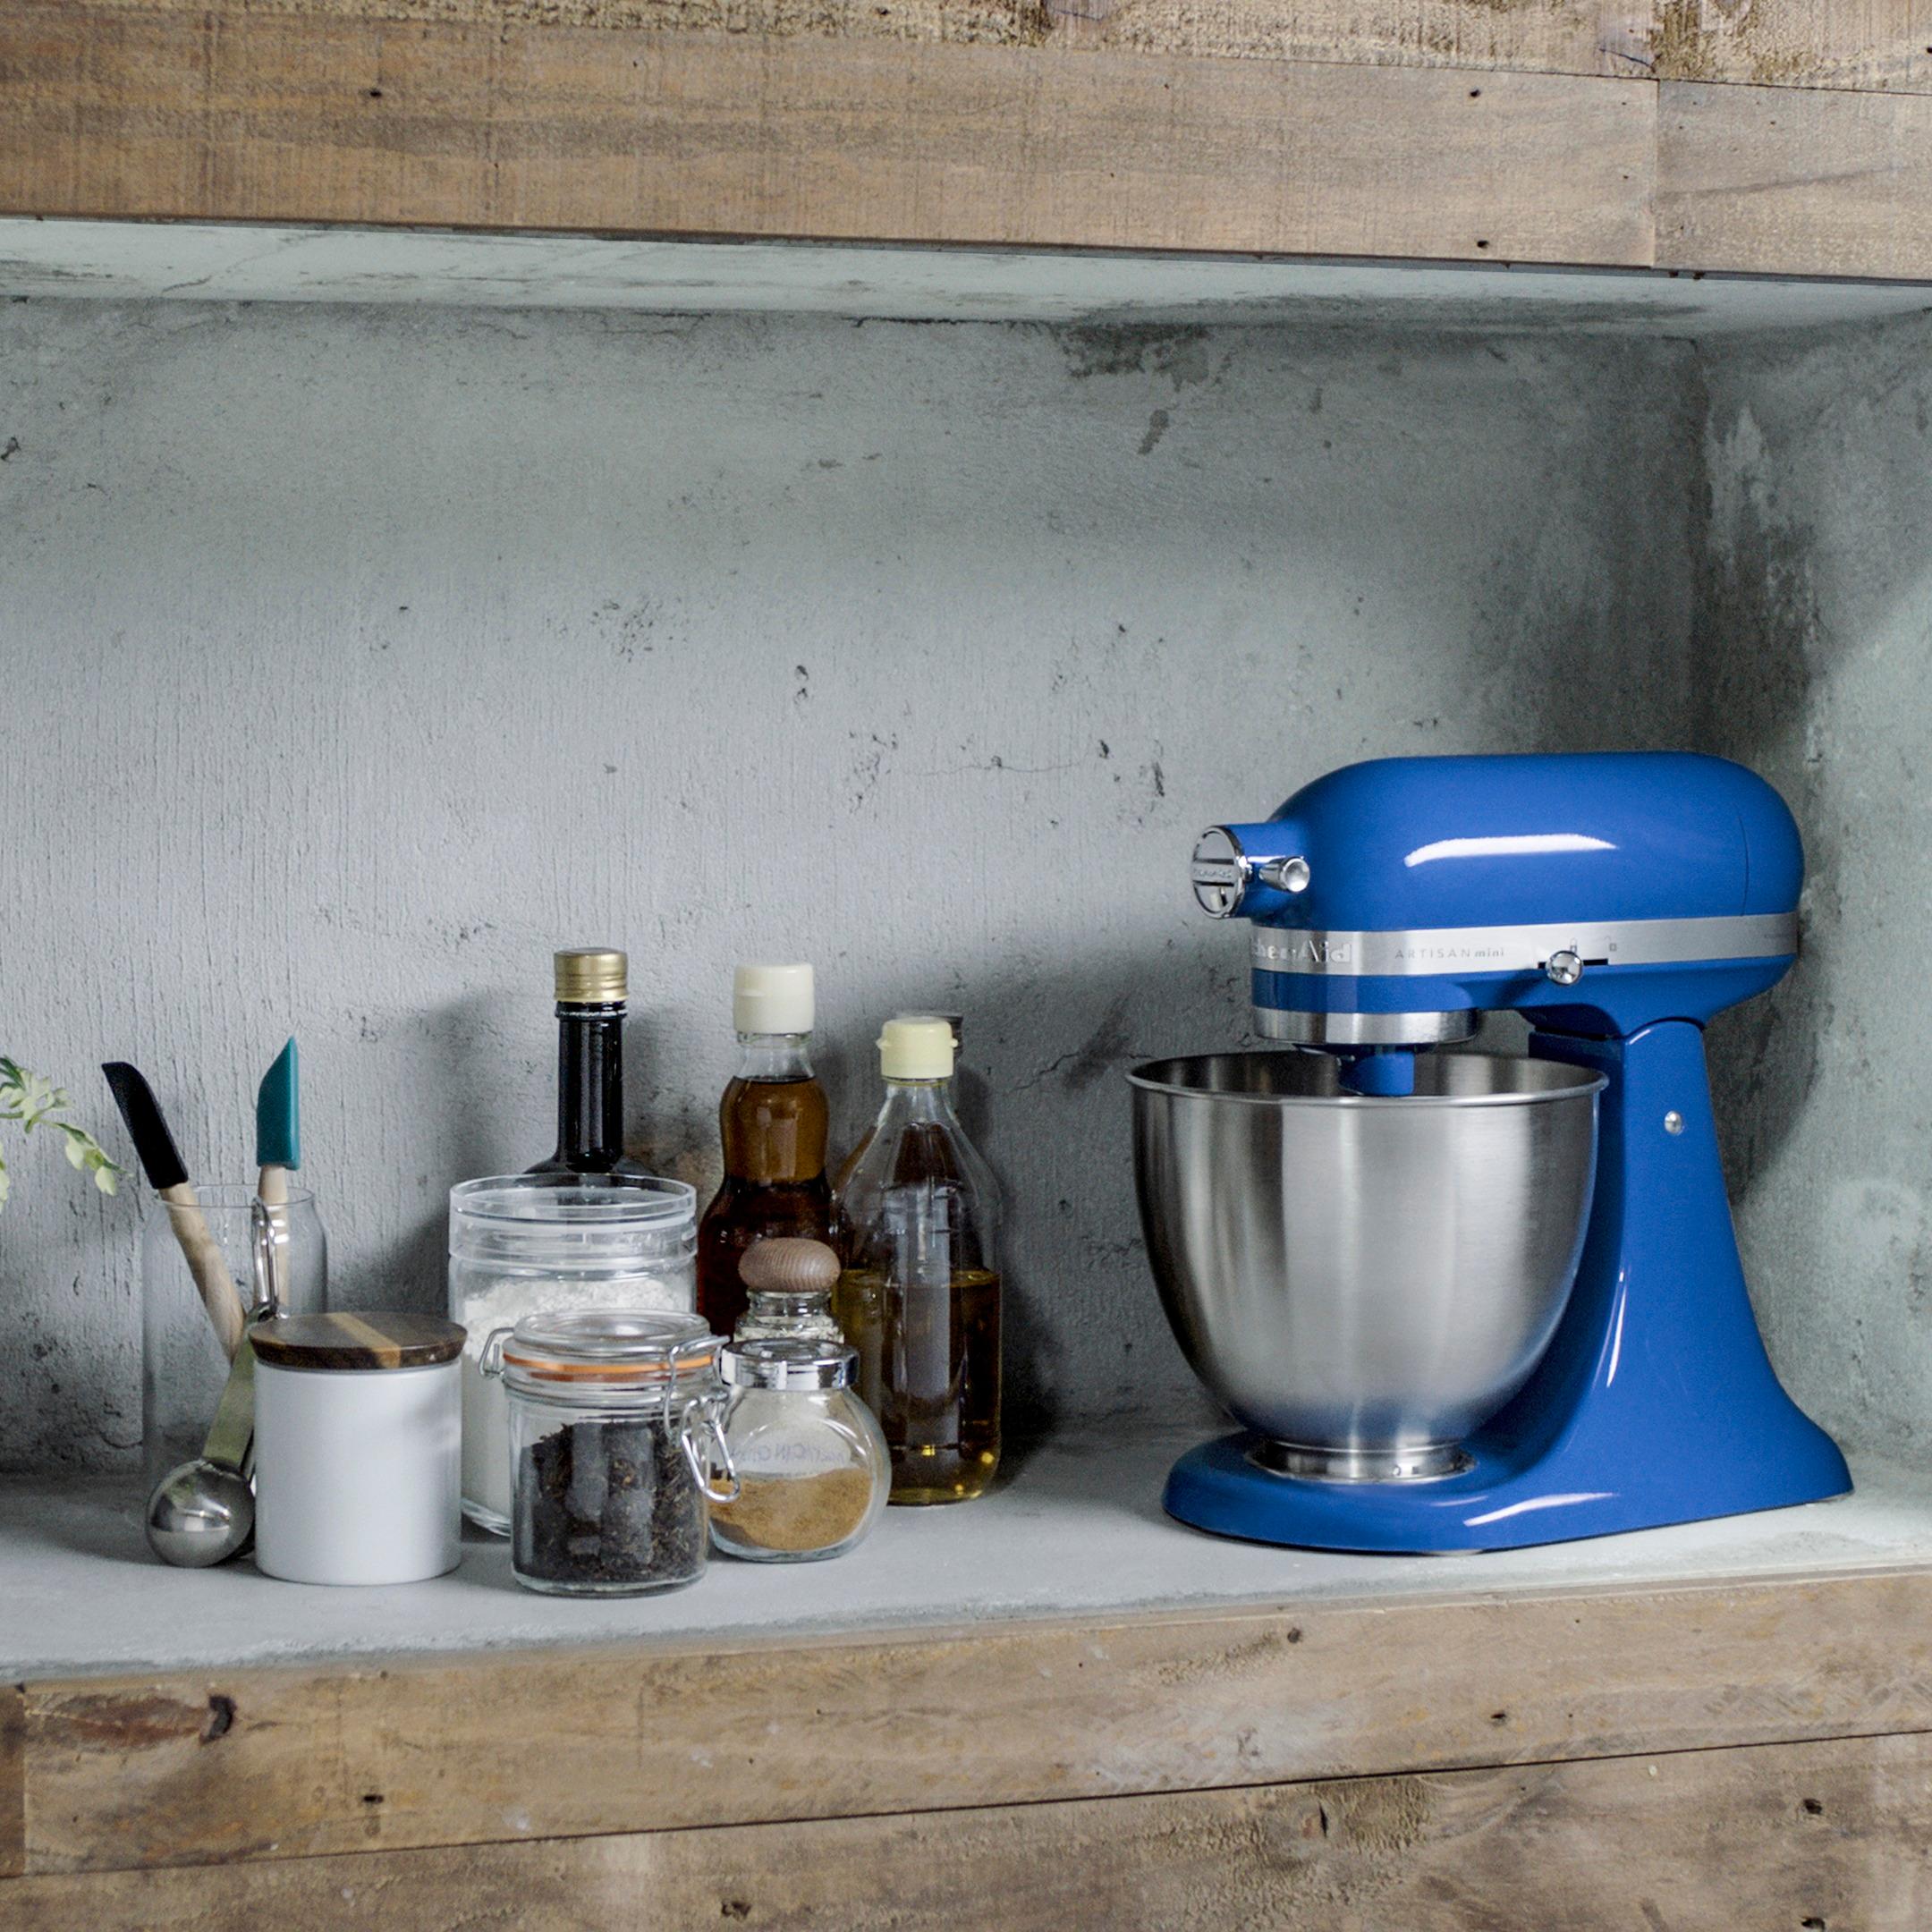  KitchenAid KSM3311XAQ Artisan Mini Series Tilt-Head Stand Mixer,  3.5 quart, Aqua Sky Blue: Home & Kitchen